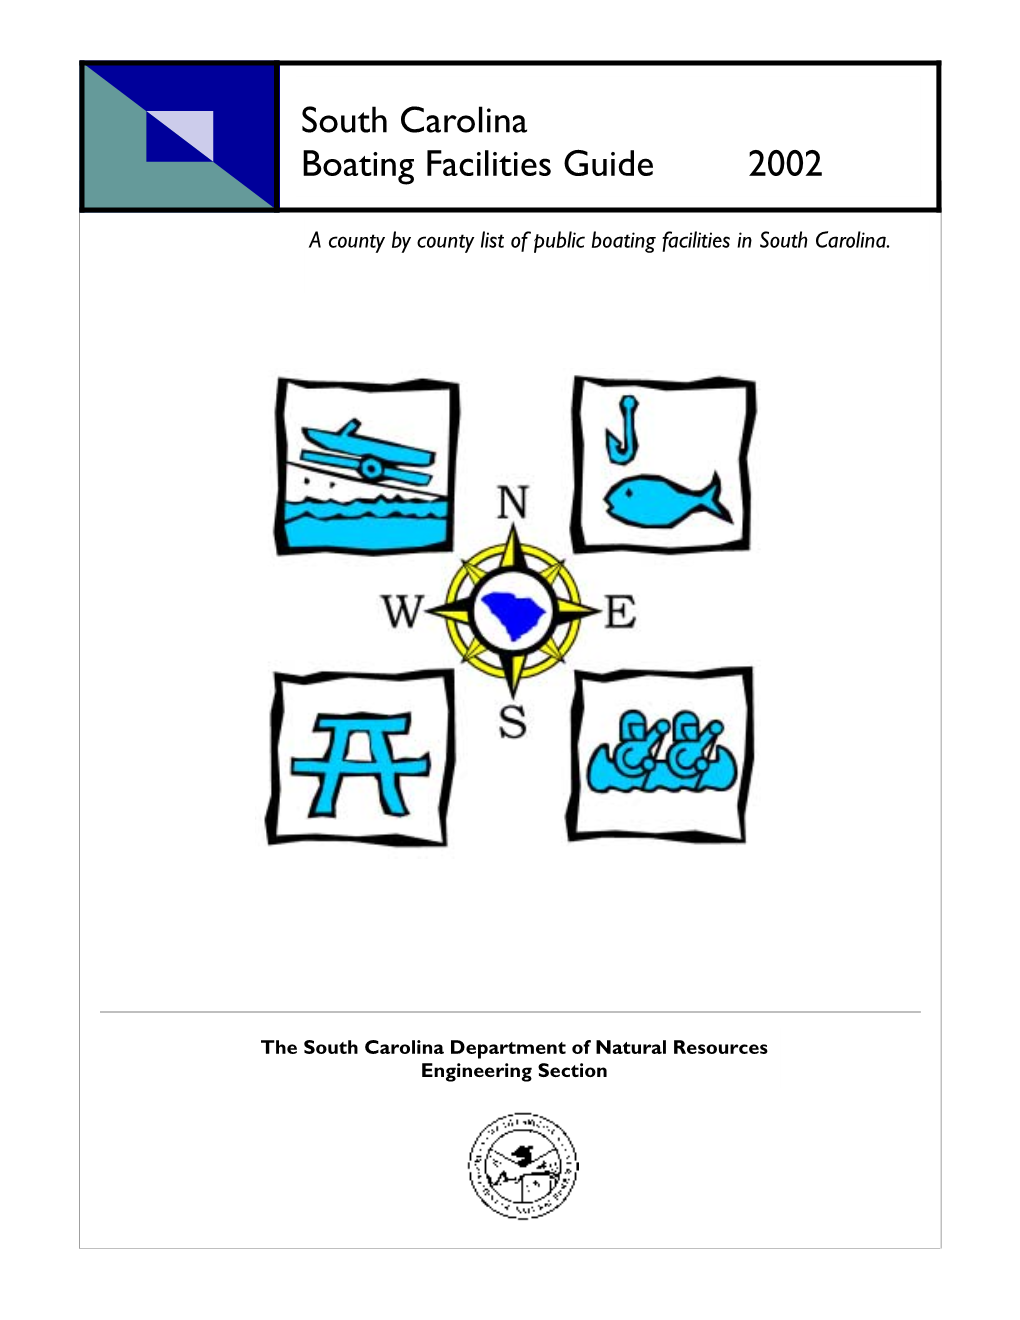 South Carolina Boating Facilities Guide